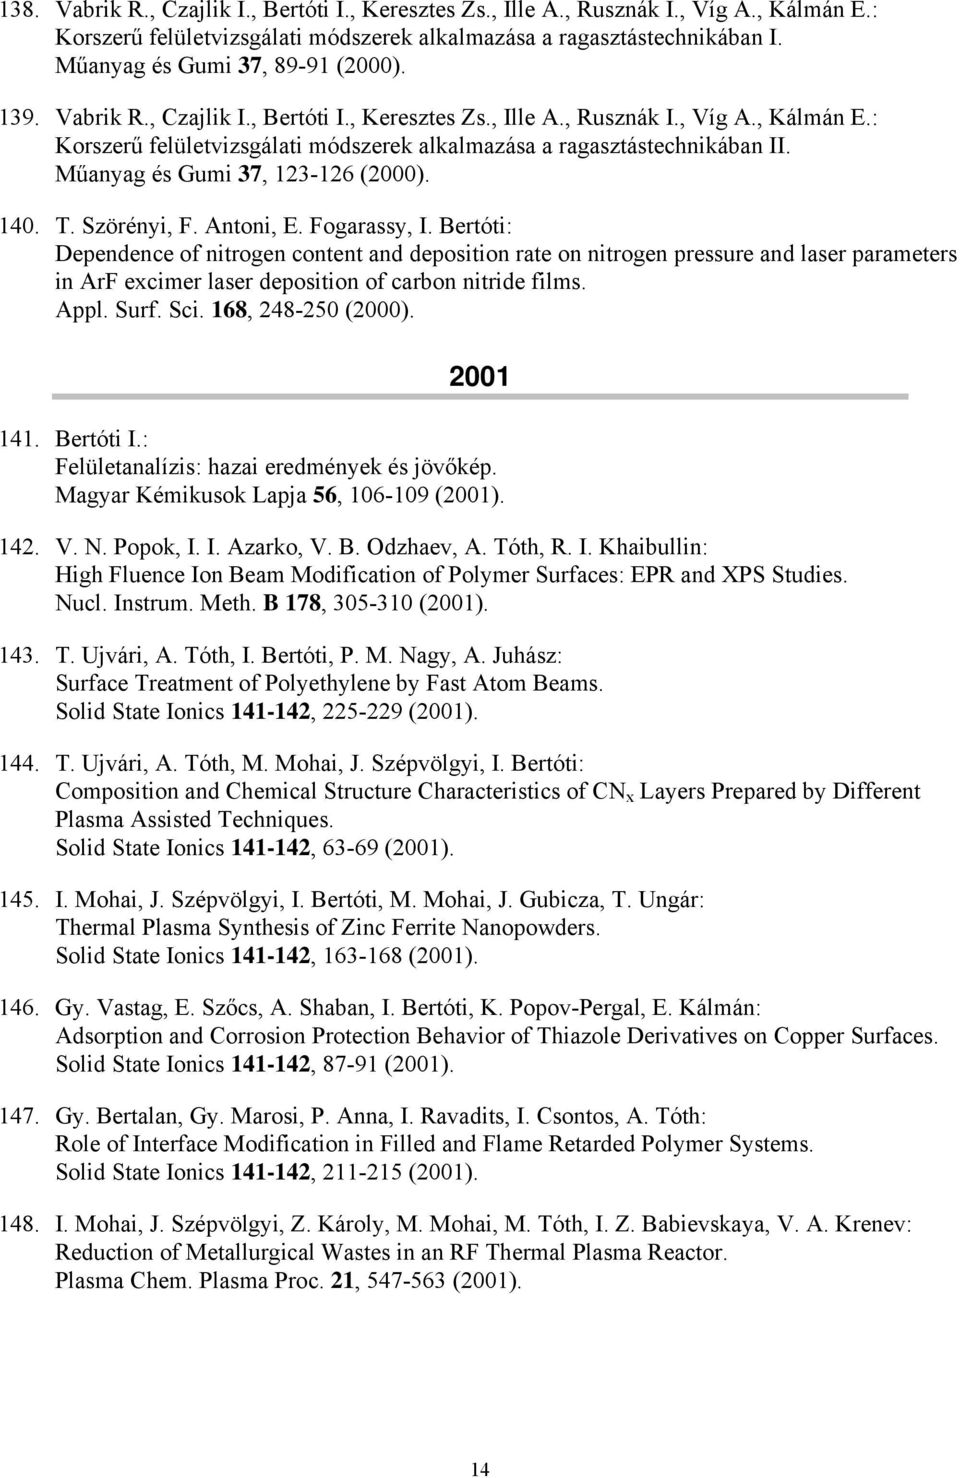 : Korszerű felületvizsgálati módszerek alkalmazása a ragasztástechnikában II. Műanyag és Gumi 37, 123-126 (2000). 140. T. Szörényi, F. Antoni, E. Fogarassy, I.